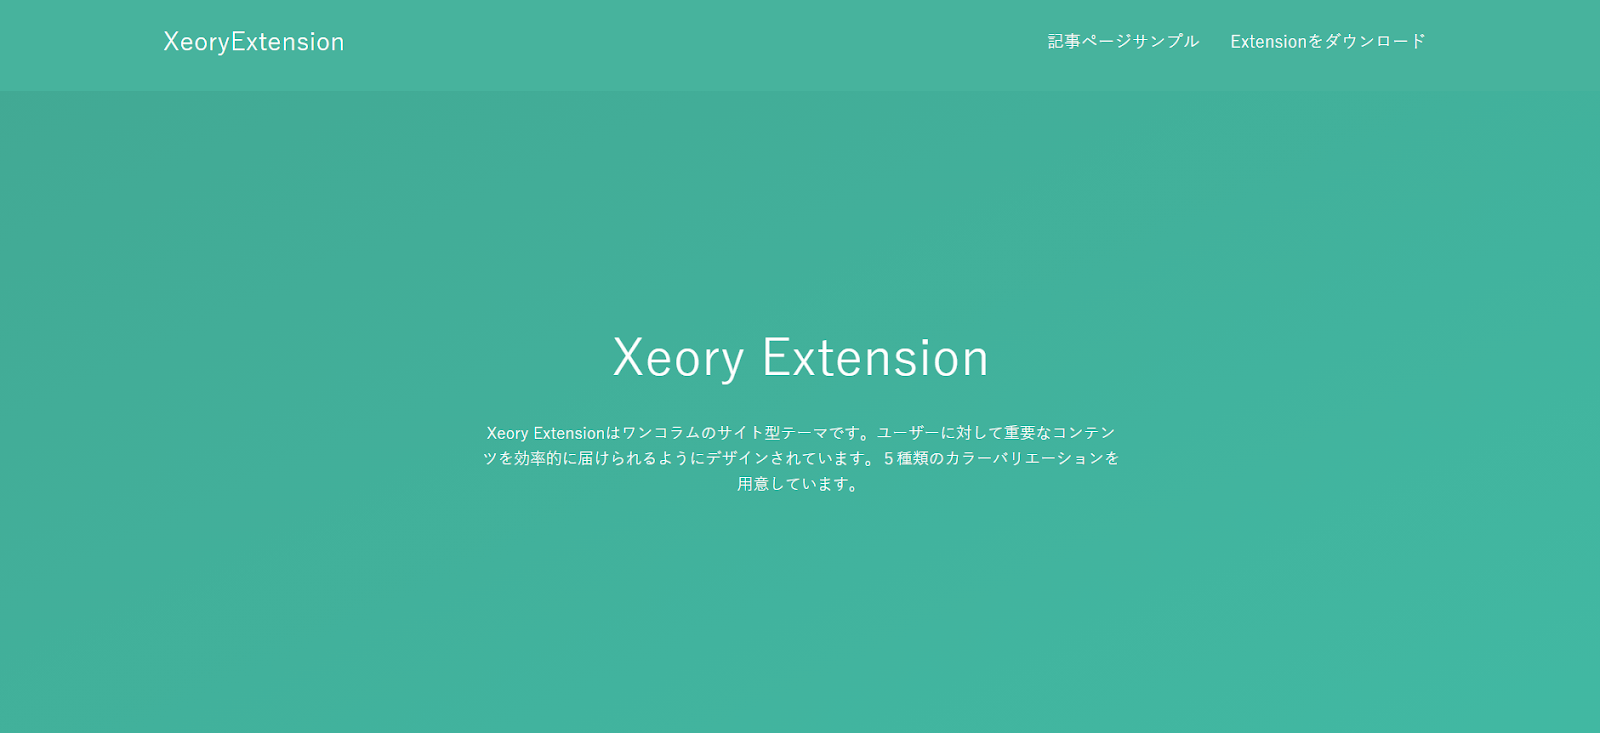 Xeory Extensionのトップページの画像